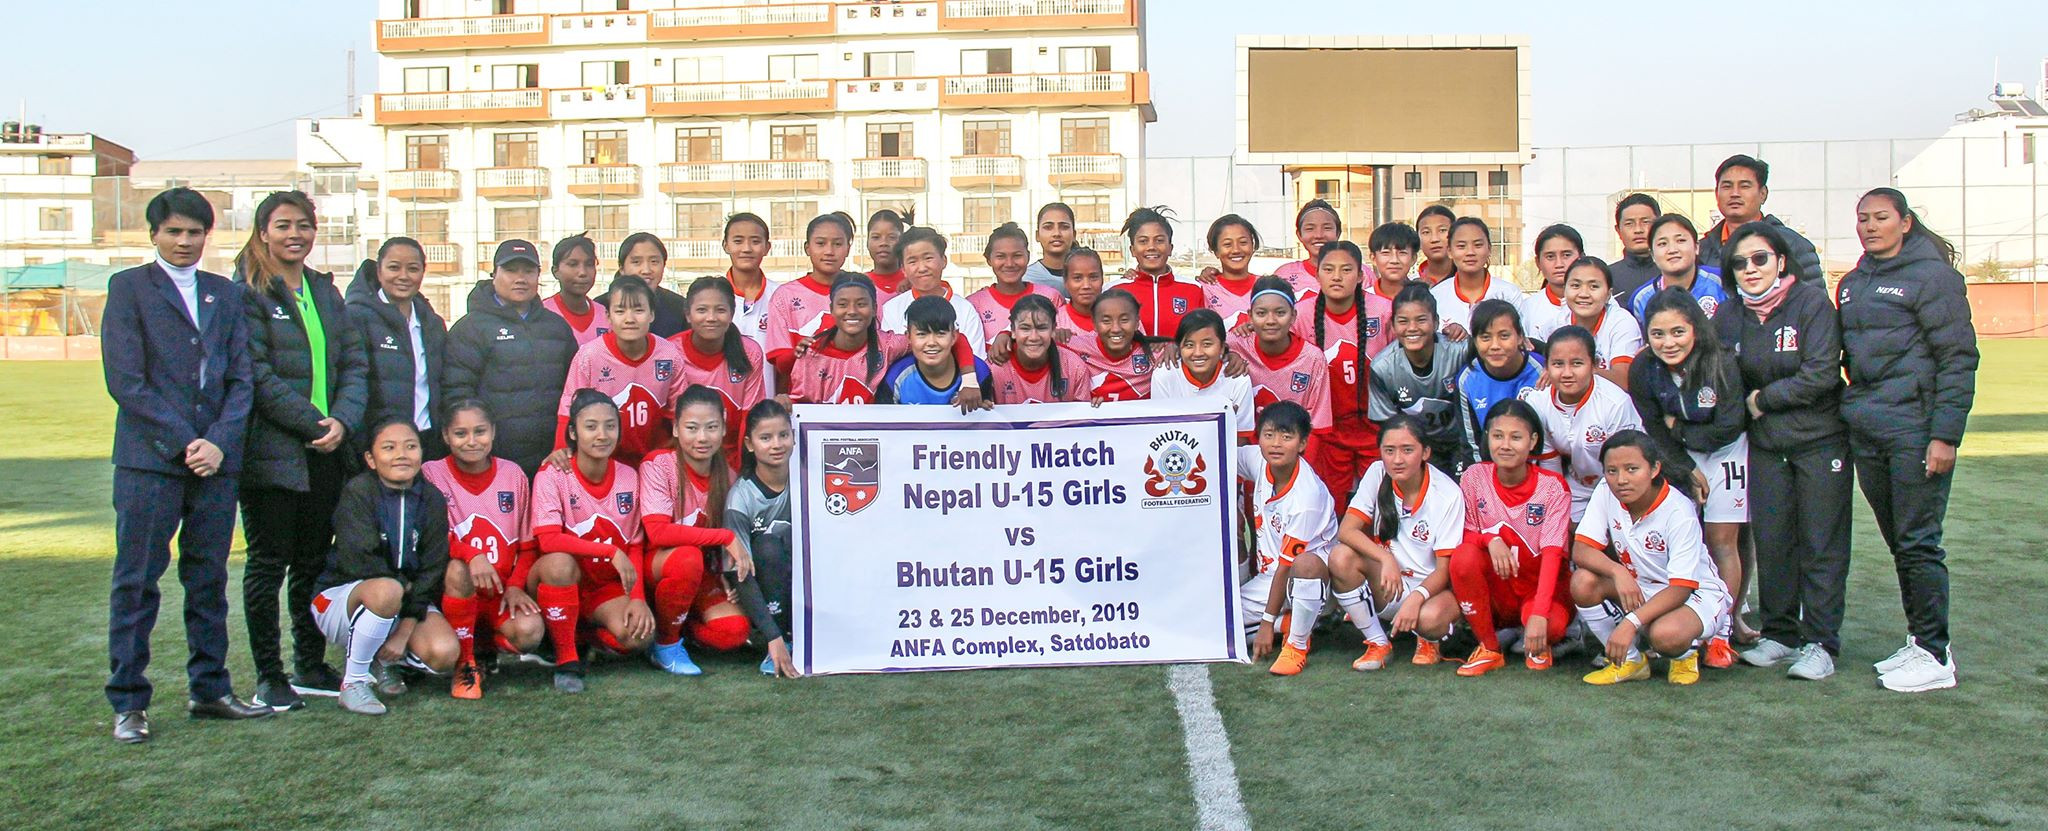 नेपाल र भुटानबीच दोस्रो मैत्रीपूर्ण फुटबल आज